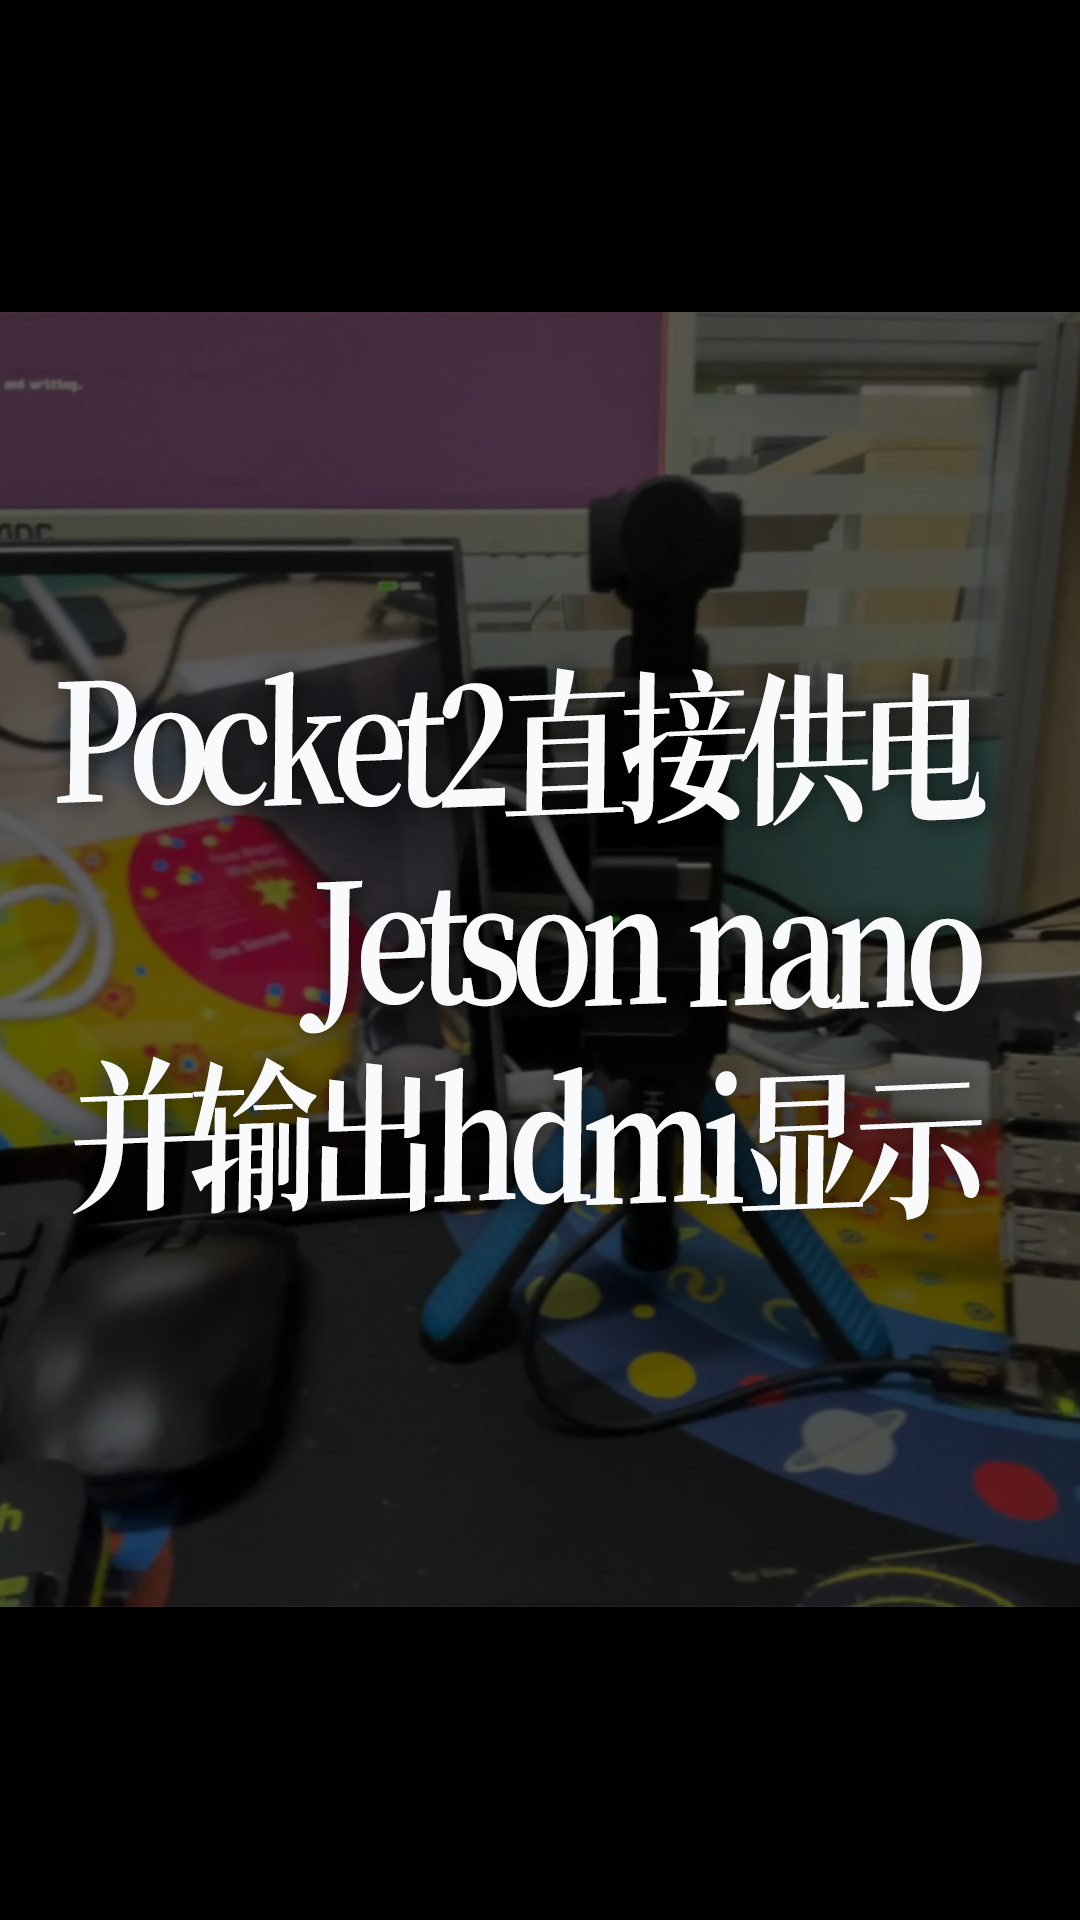 Pocket2直接供电Jetson nano并输出hdmi显示 